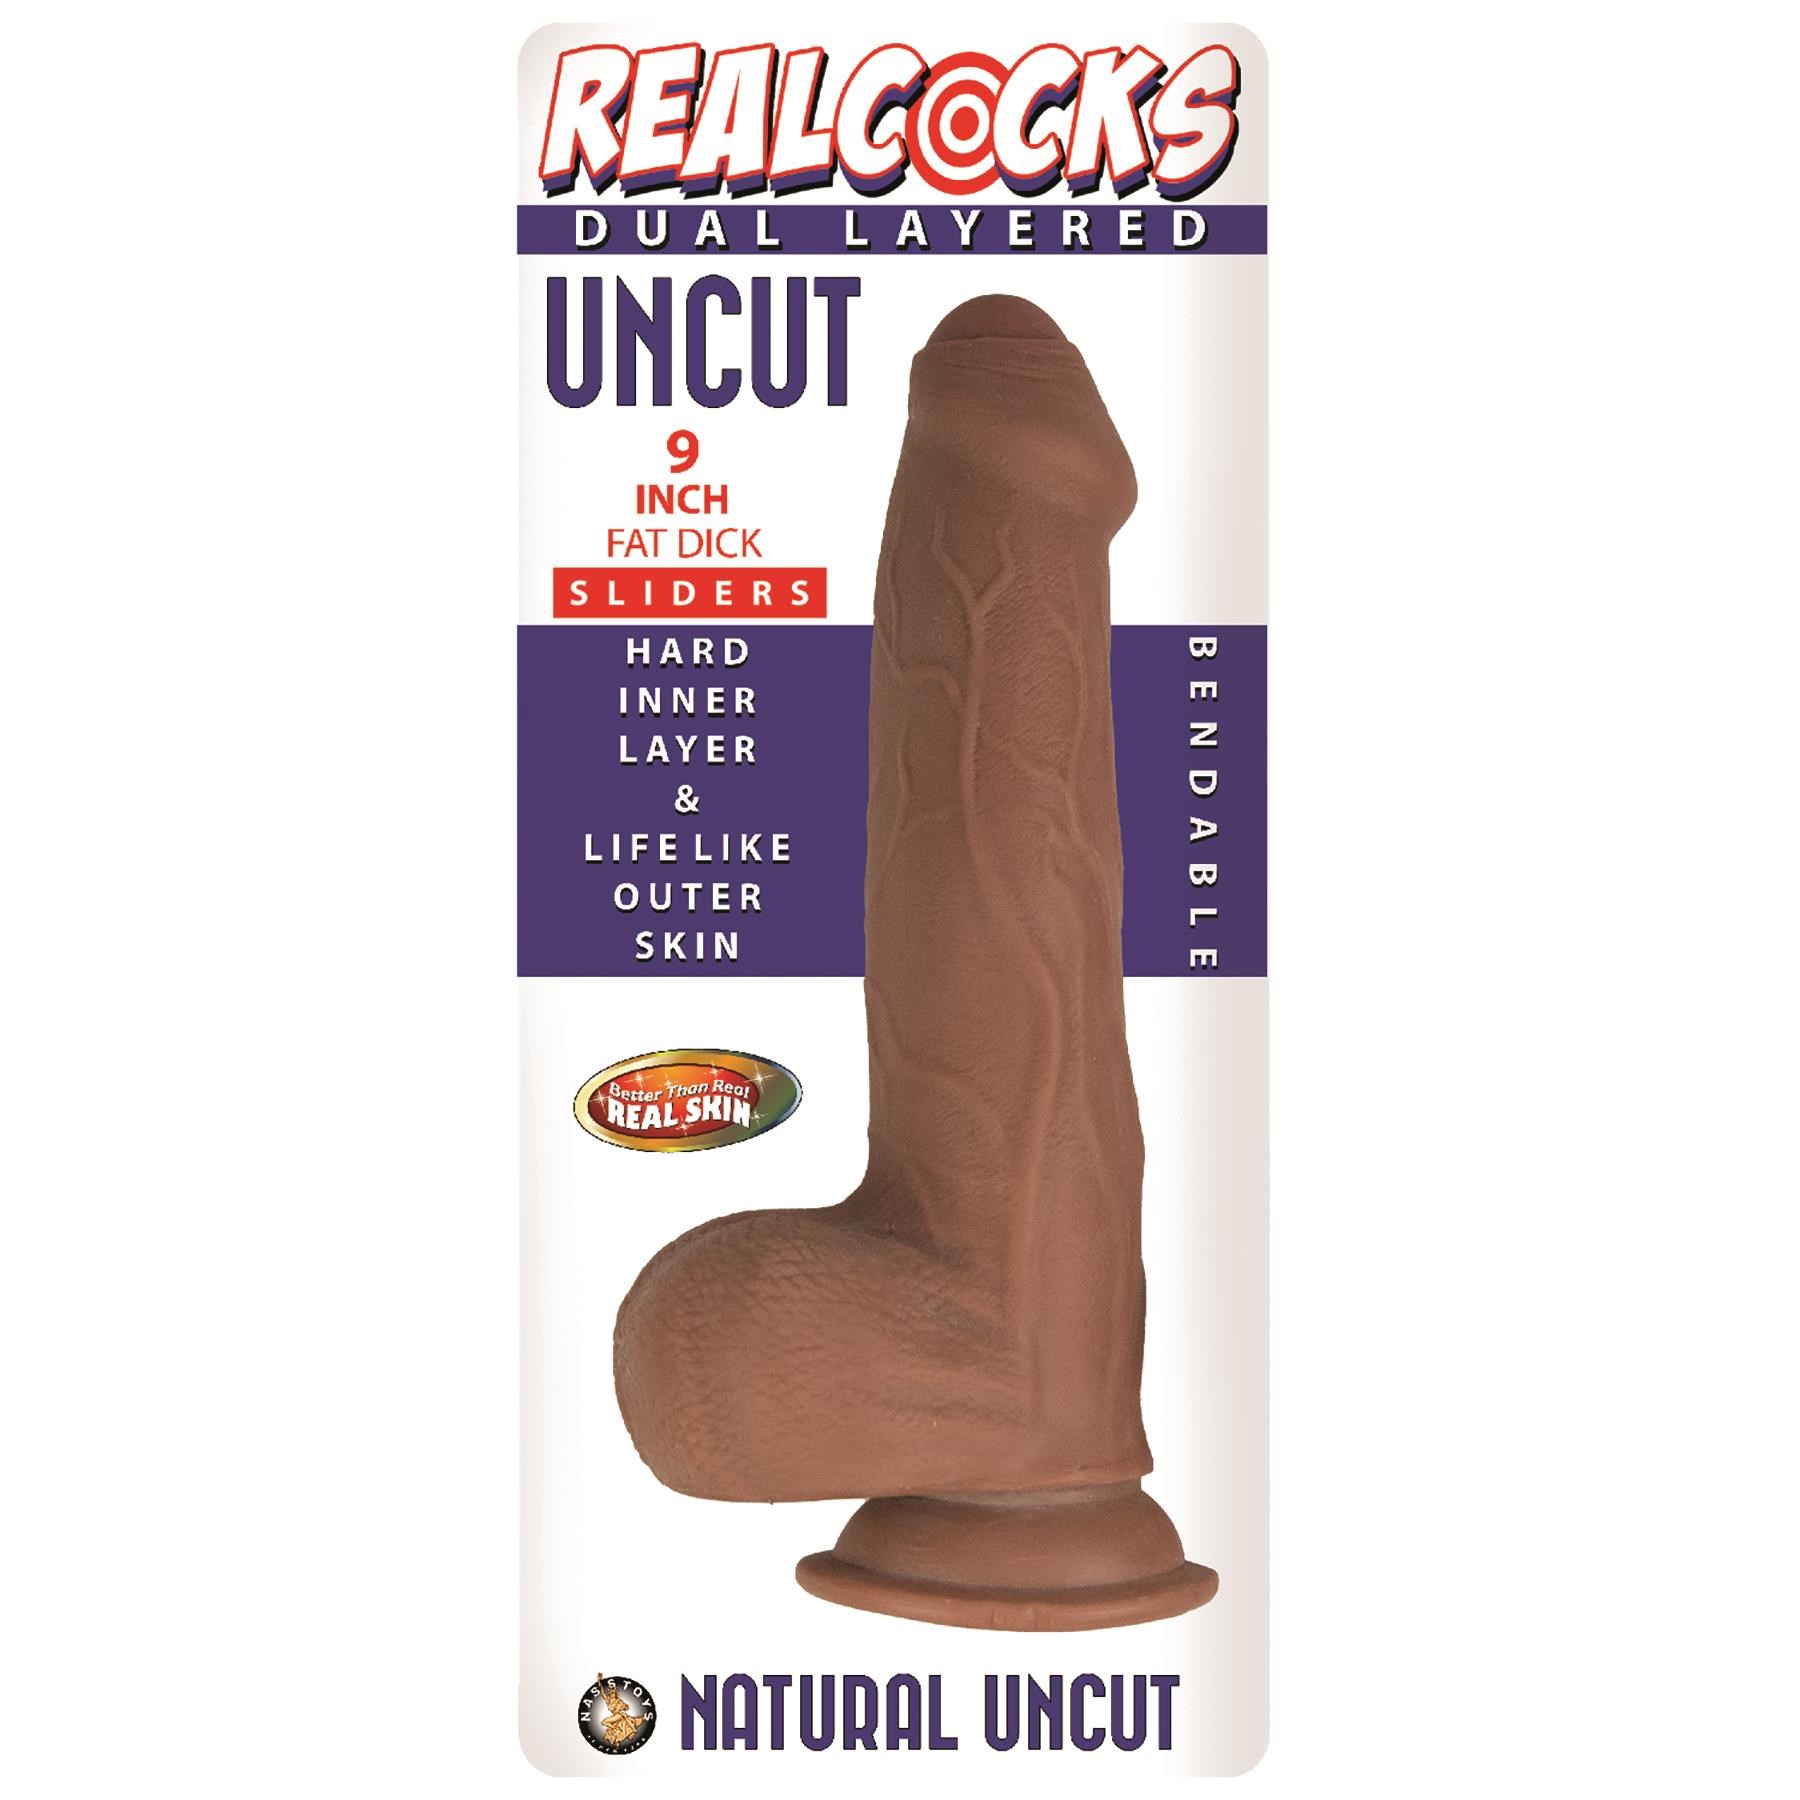 Realcocks 9 Inch Fat Dick Dual Layered Uncut Sliders Dildo - Packaging - Brown